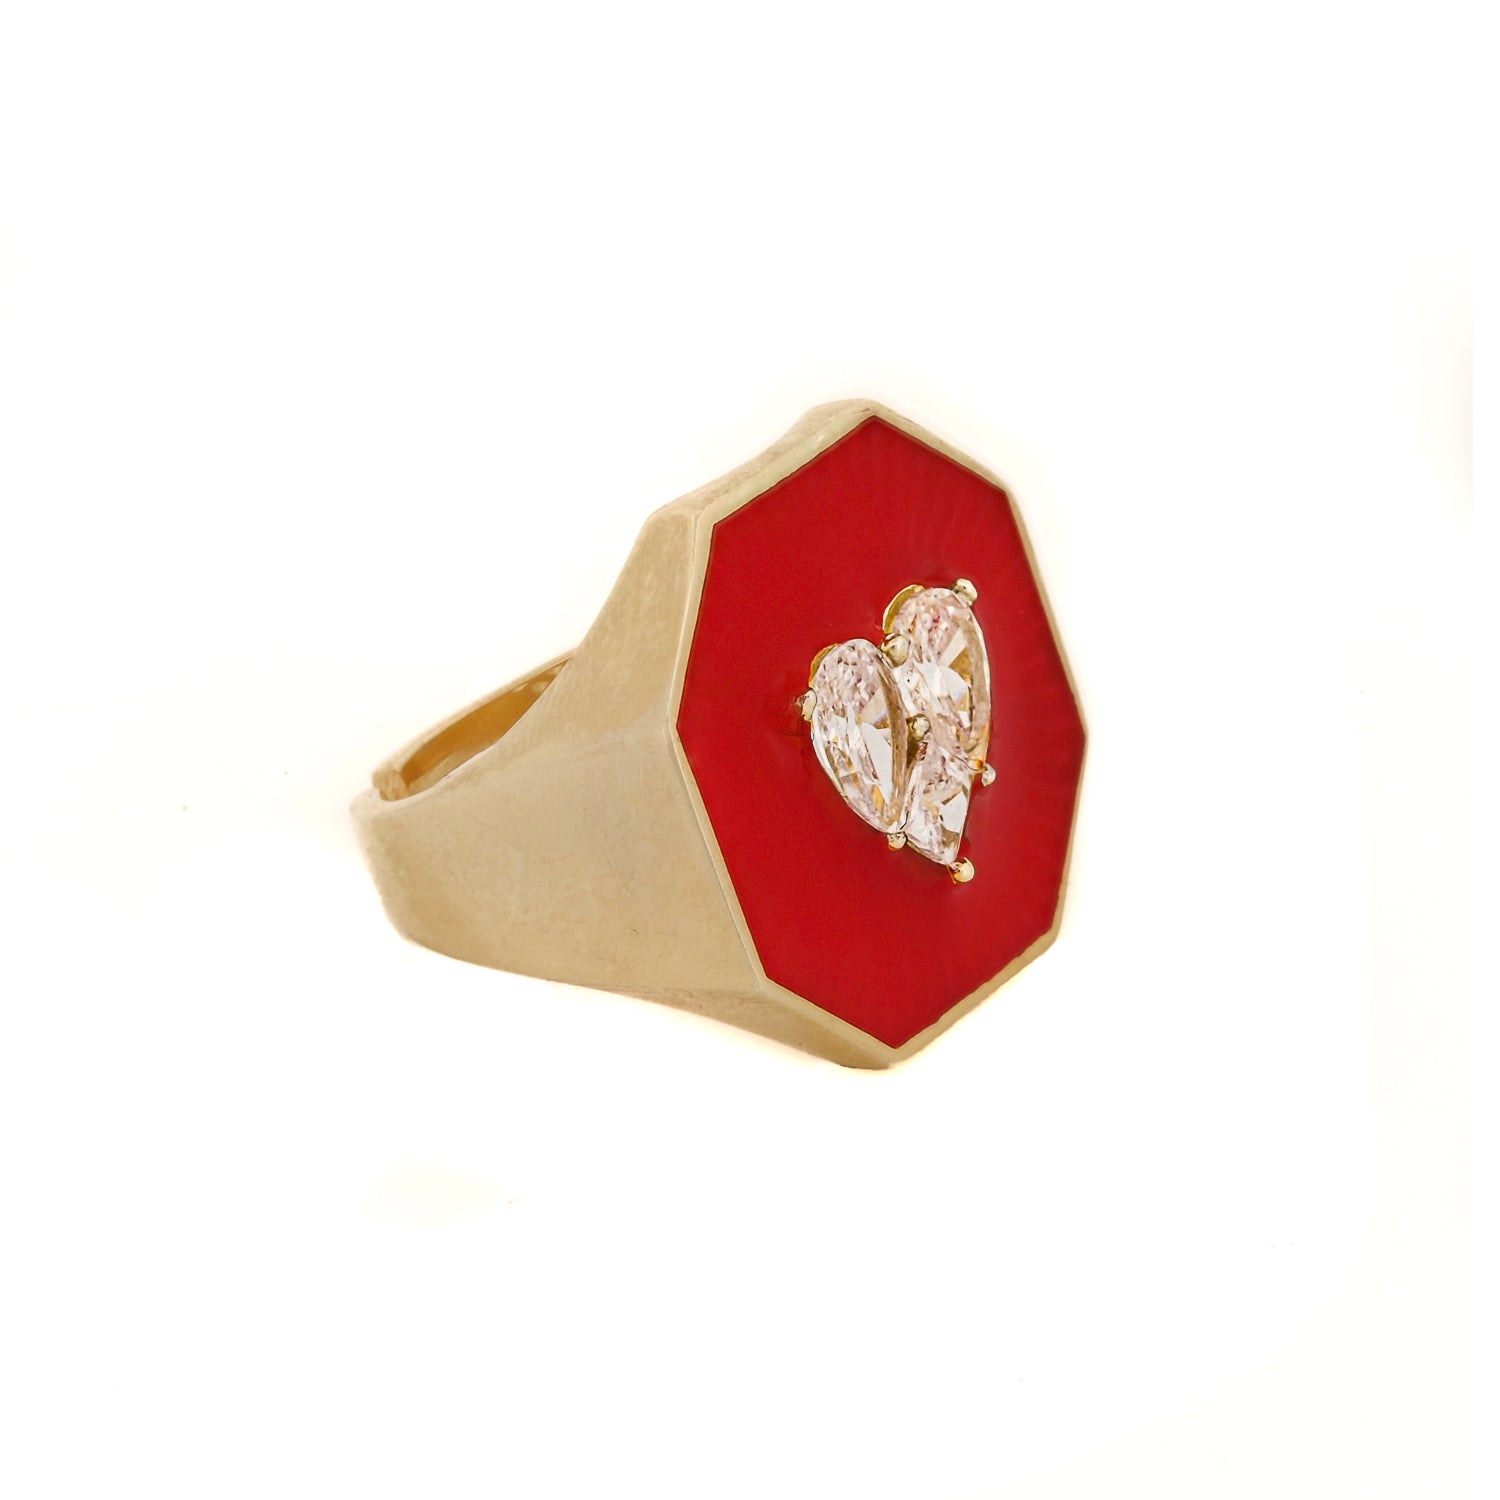 Stunning Elegance: Red Enamel Diamond Gold Ring for Valentine's